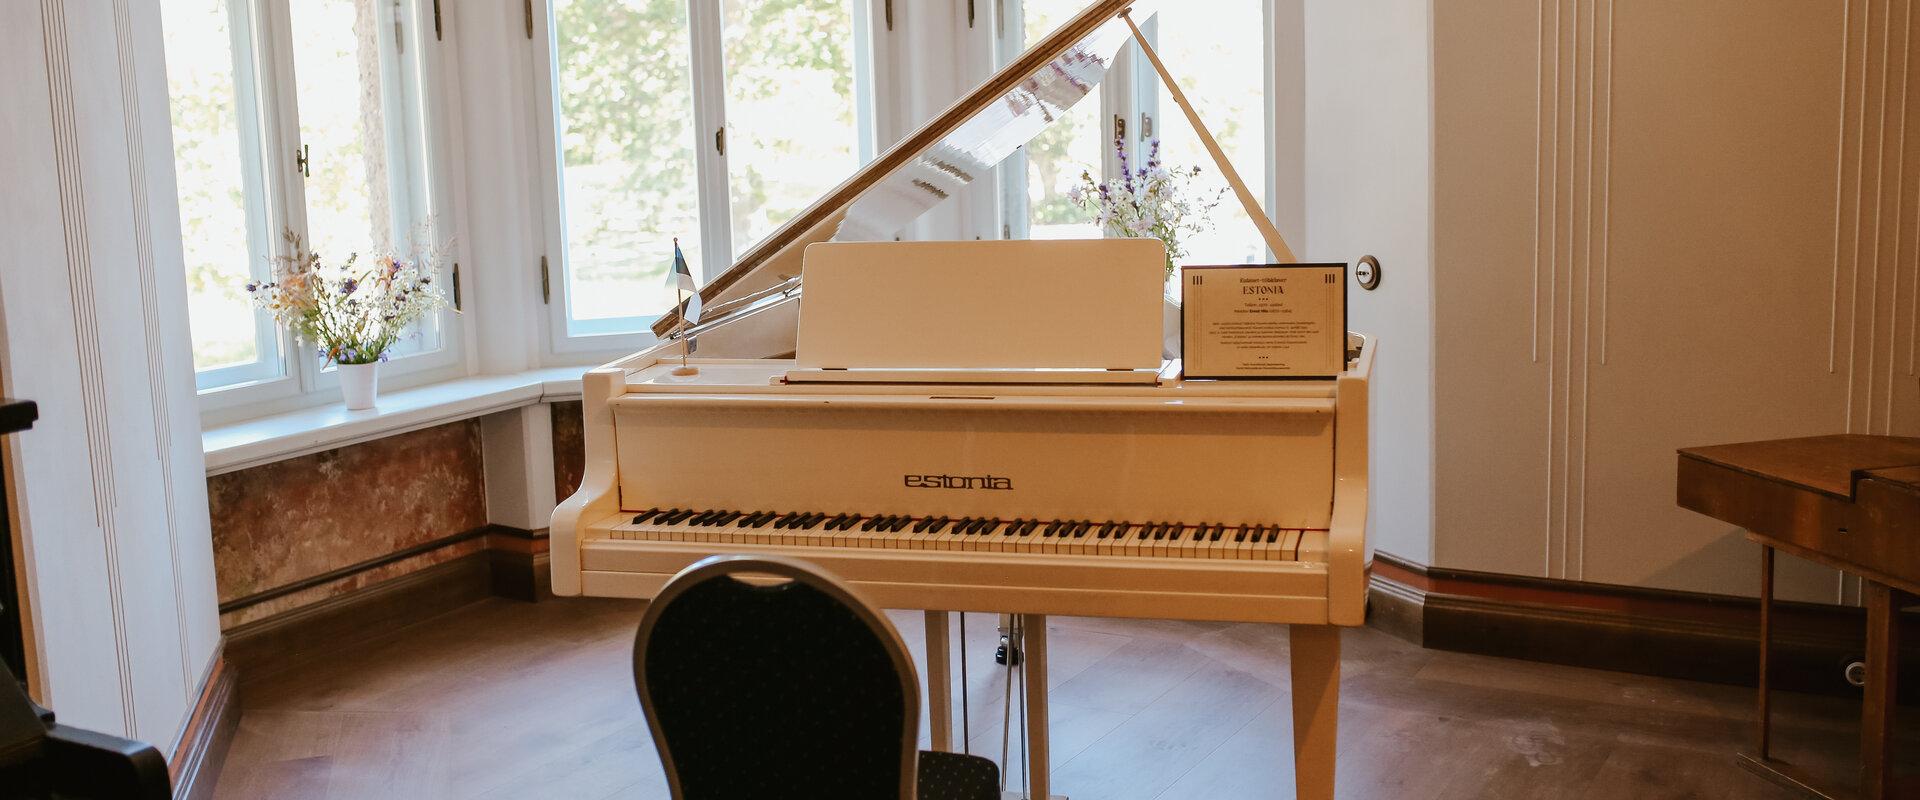 Igaunijas Nacionālais Klavieru muzejs